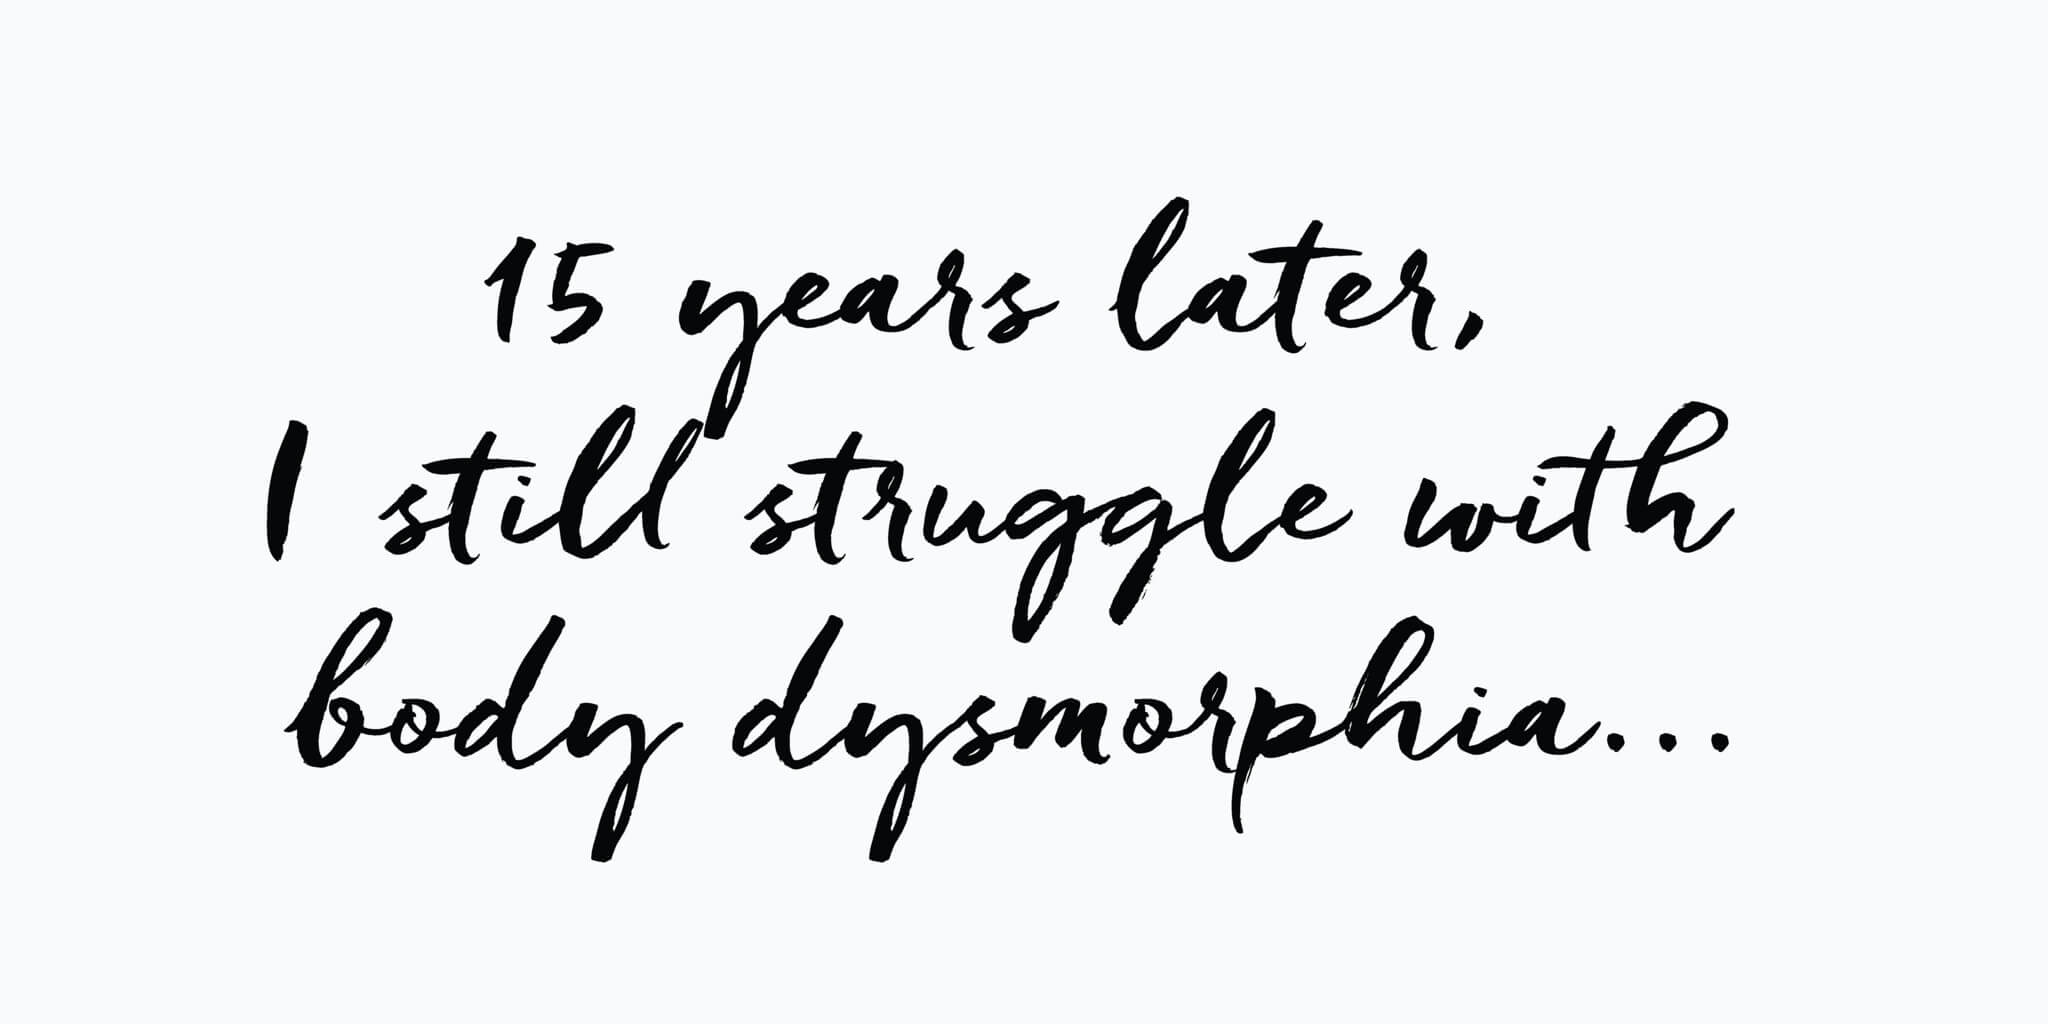 Dear Diary, 15 years later I still struggle with body dysmorphia